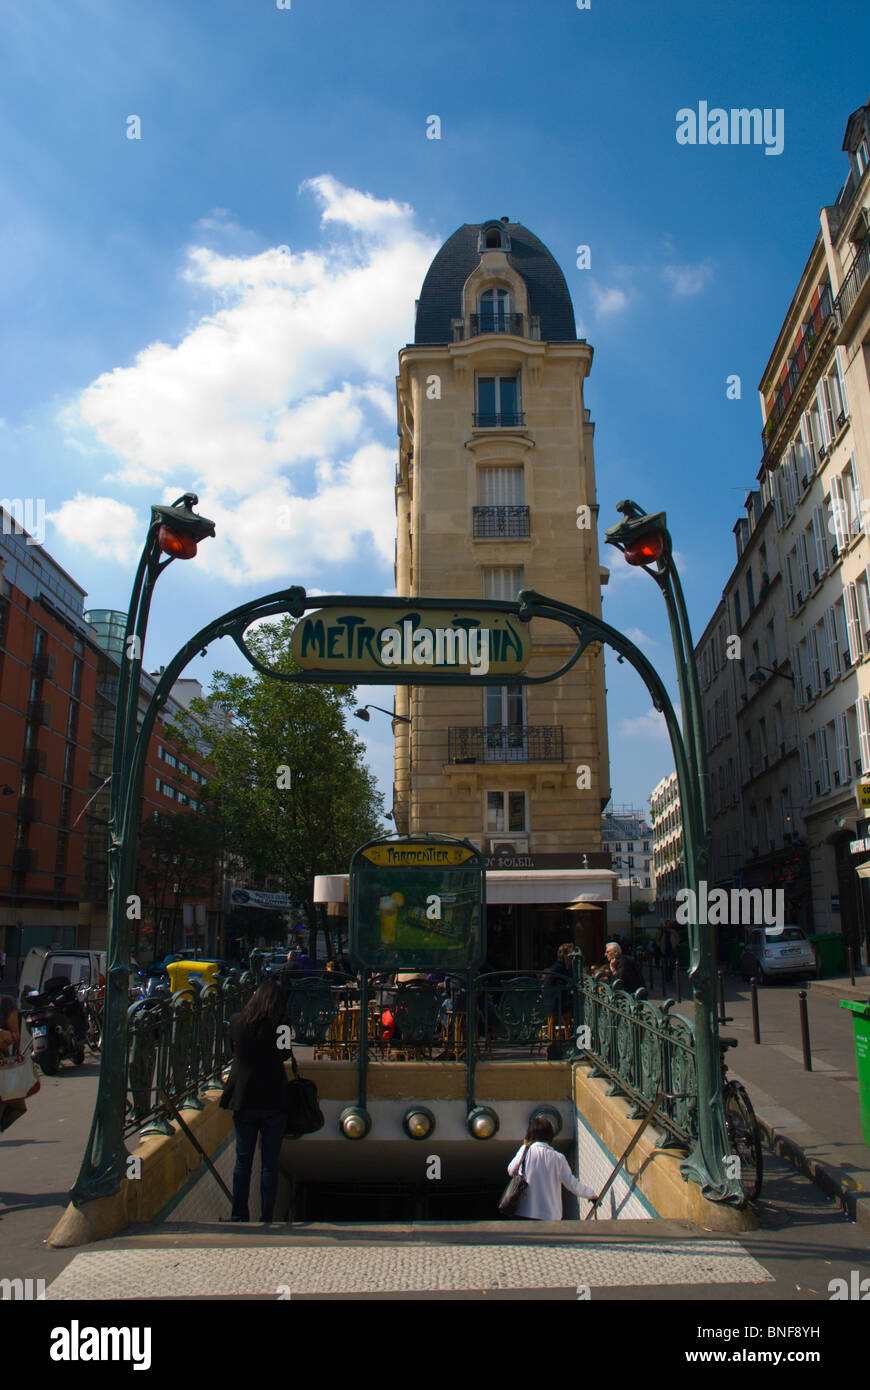 L'extérieur de la station de métro Parmentier Oberkampf Paris France Europe Banque D'Images